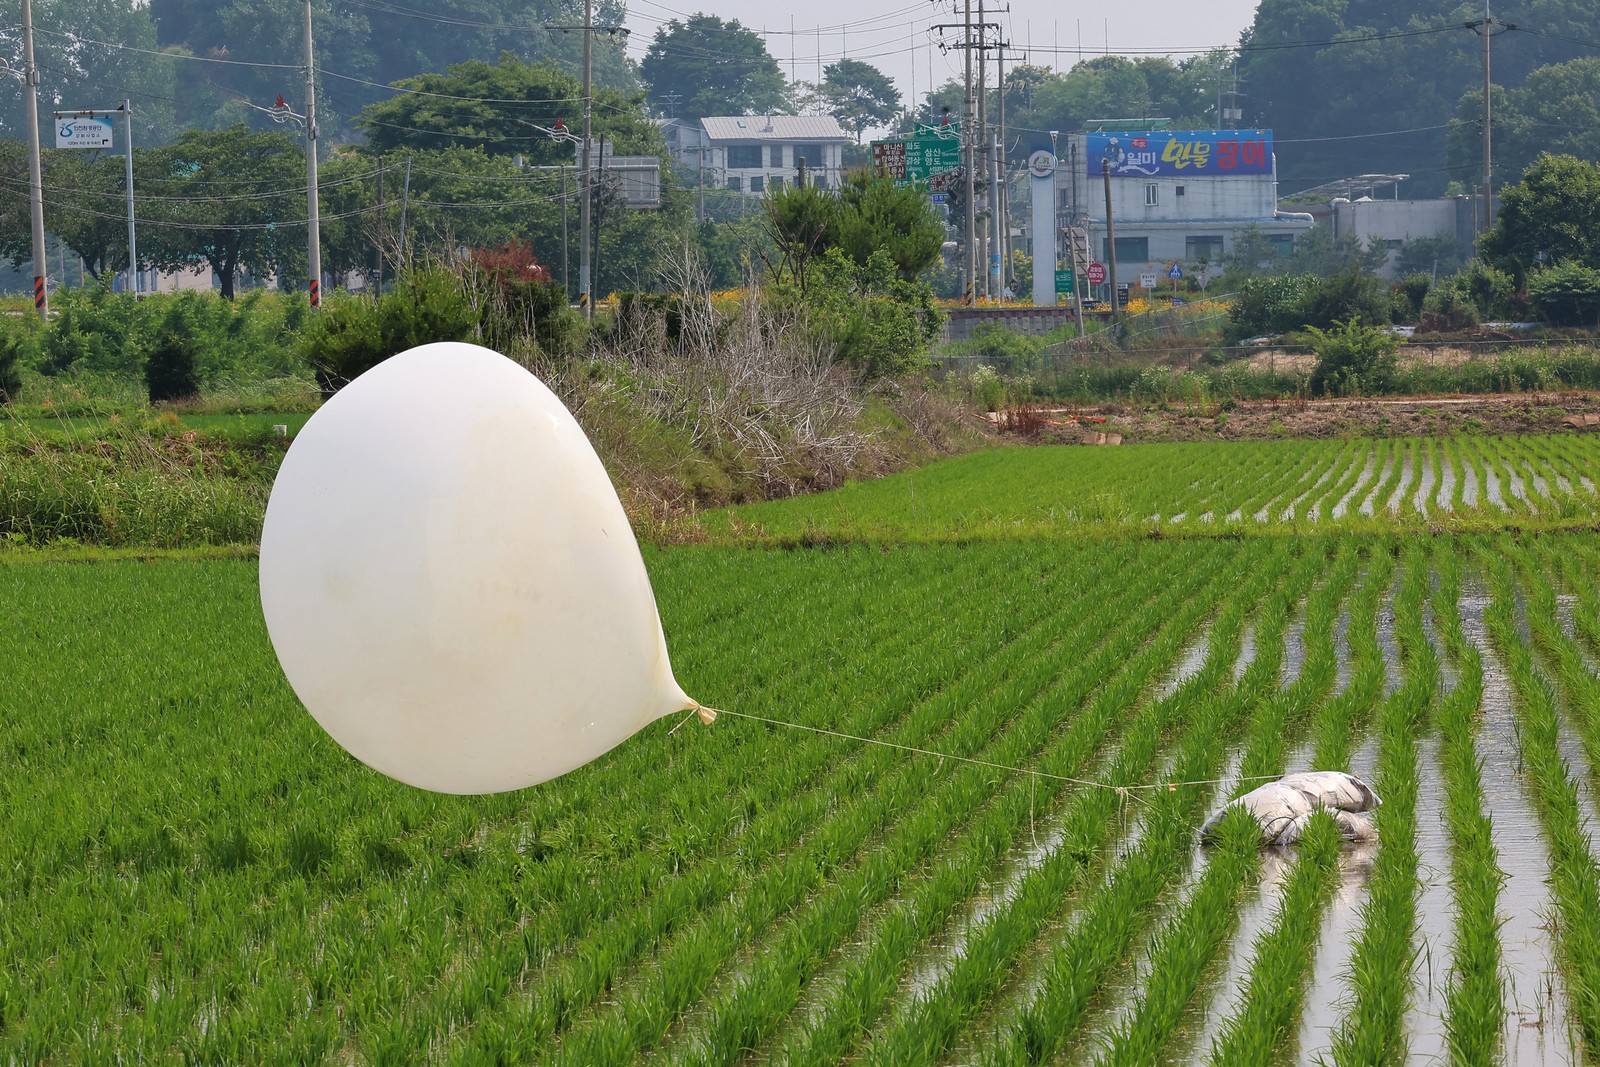 Balão lançado pela Coreia do Norte aterrissa em plantão de arroz de Incheon, território do Sul — Foto: YONHAP / AFP